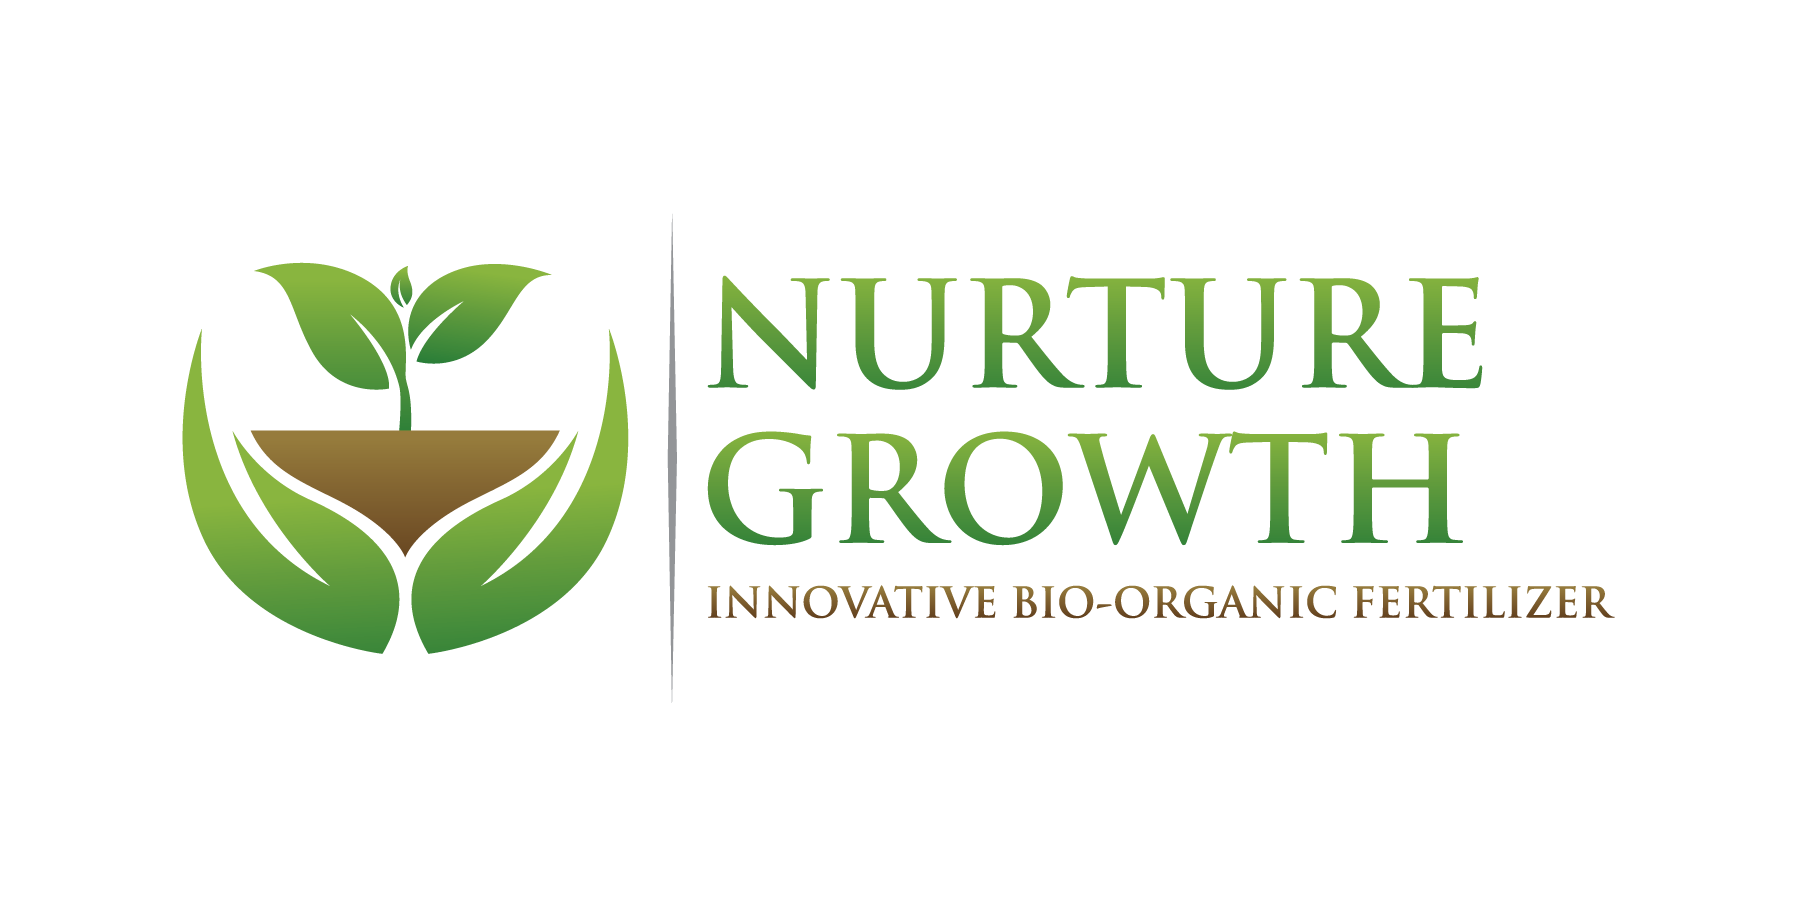 nurture growth bio logo